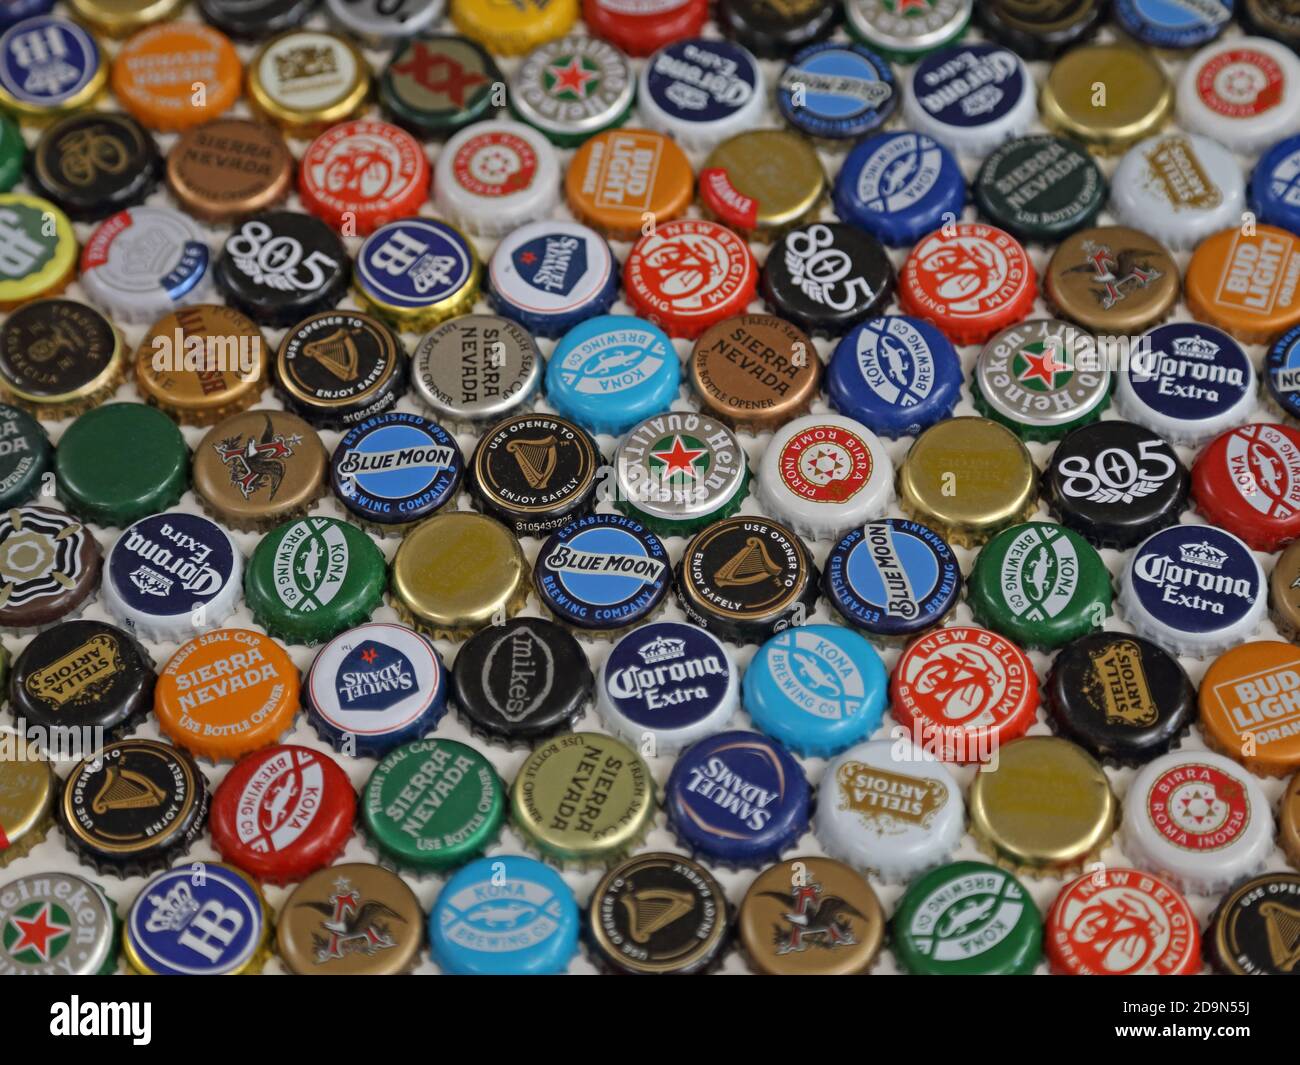 Los Angeles, CA / USA - 30 ottobre 2020: I colorati tappi per bottiglie di birra in metallo di una varietà di marchi internazionali sono mostrati in un display piatto. Foto Stock